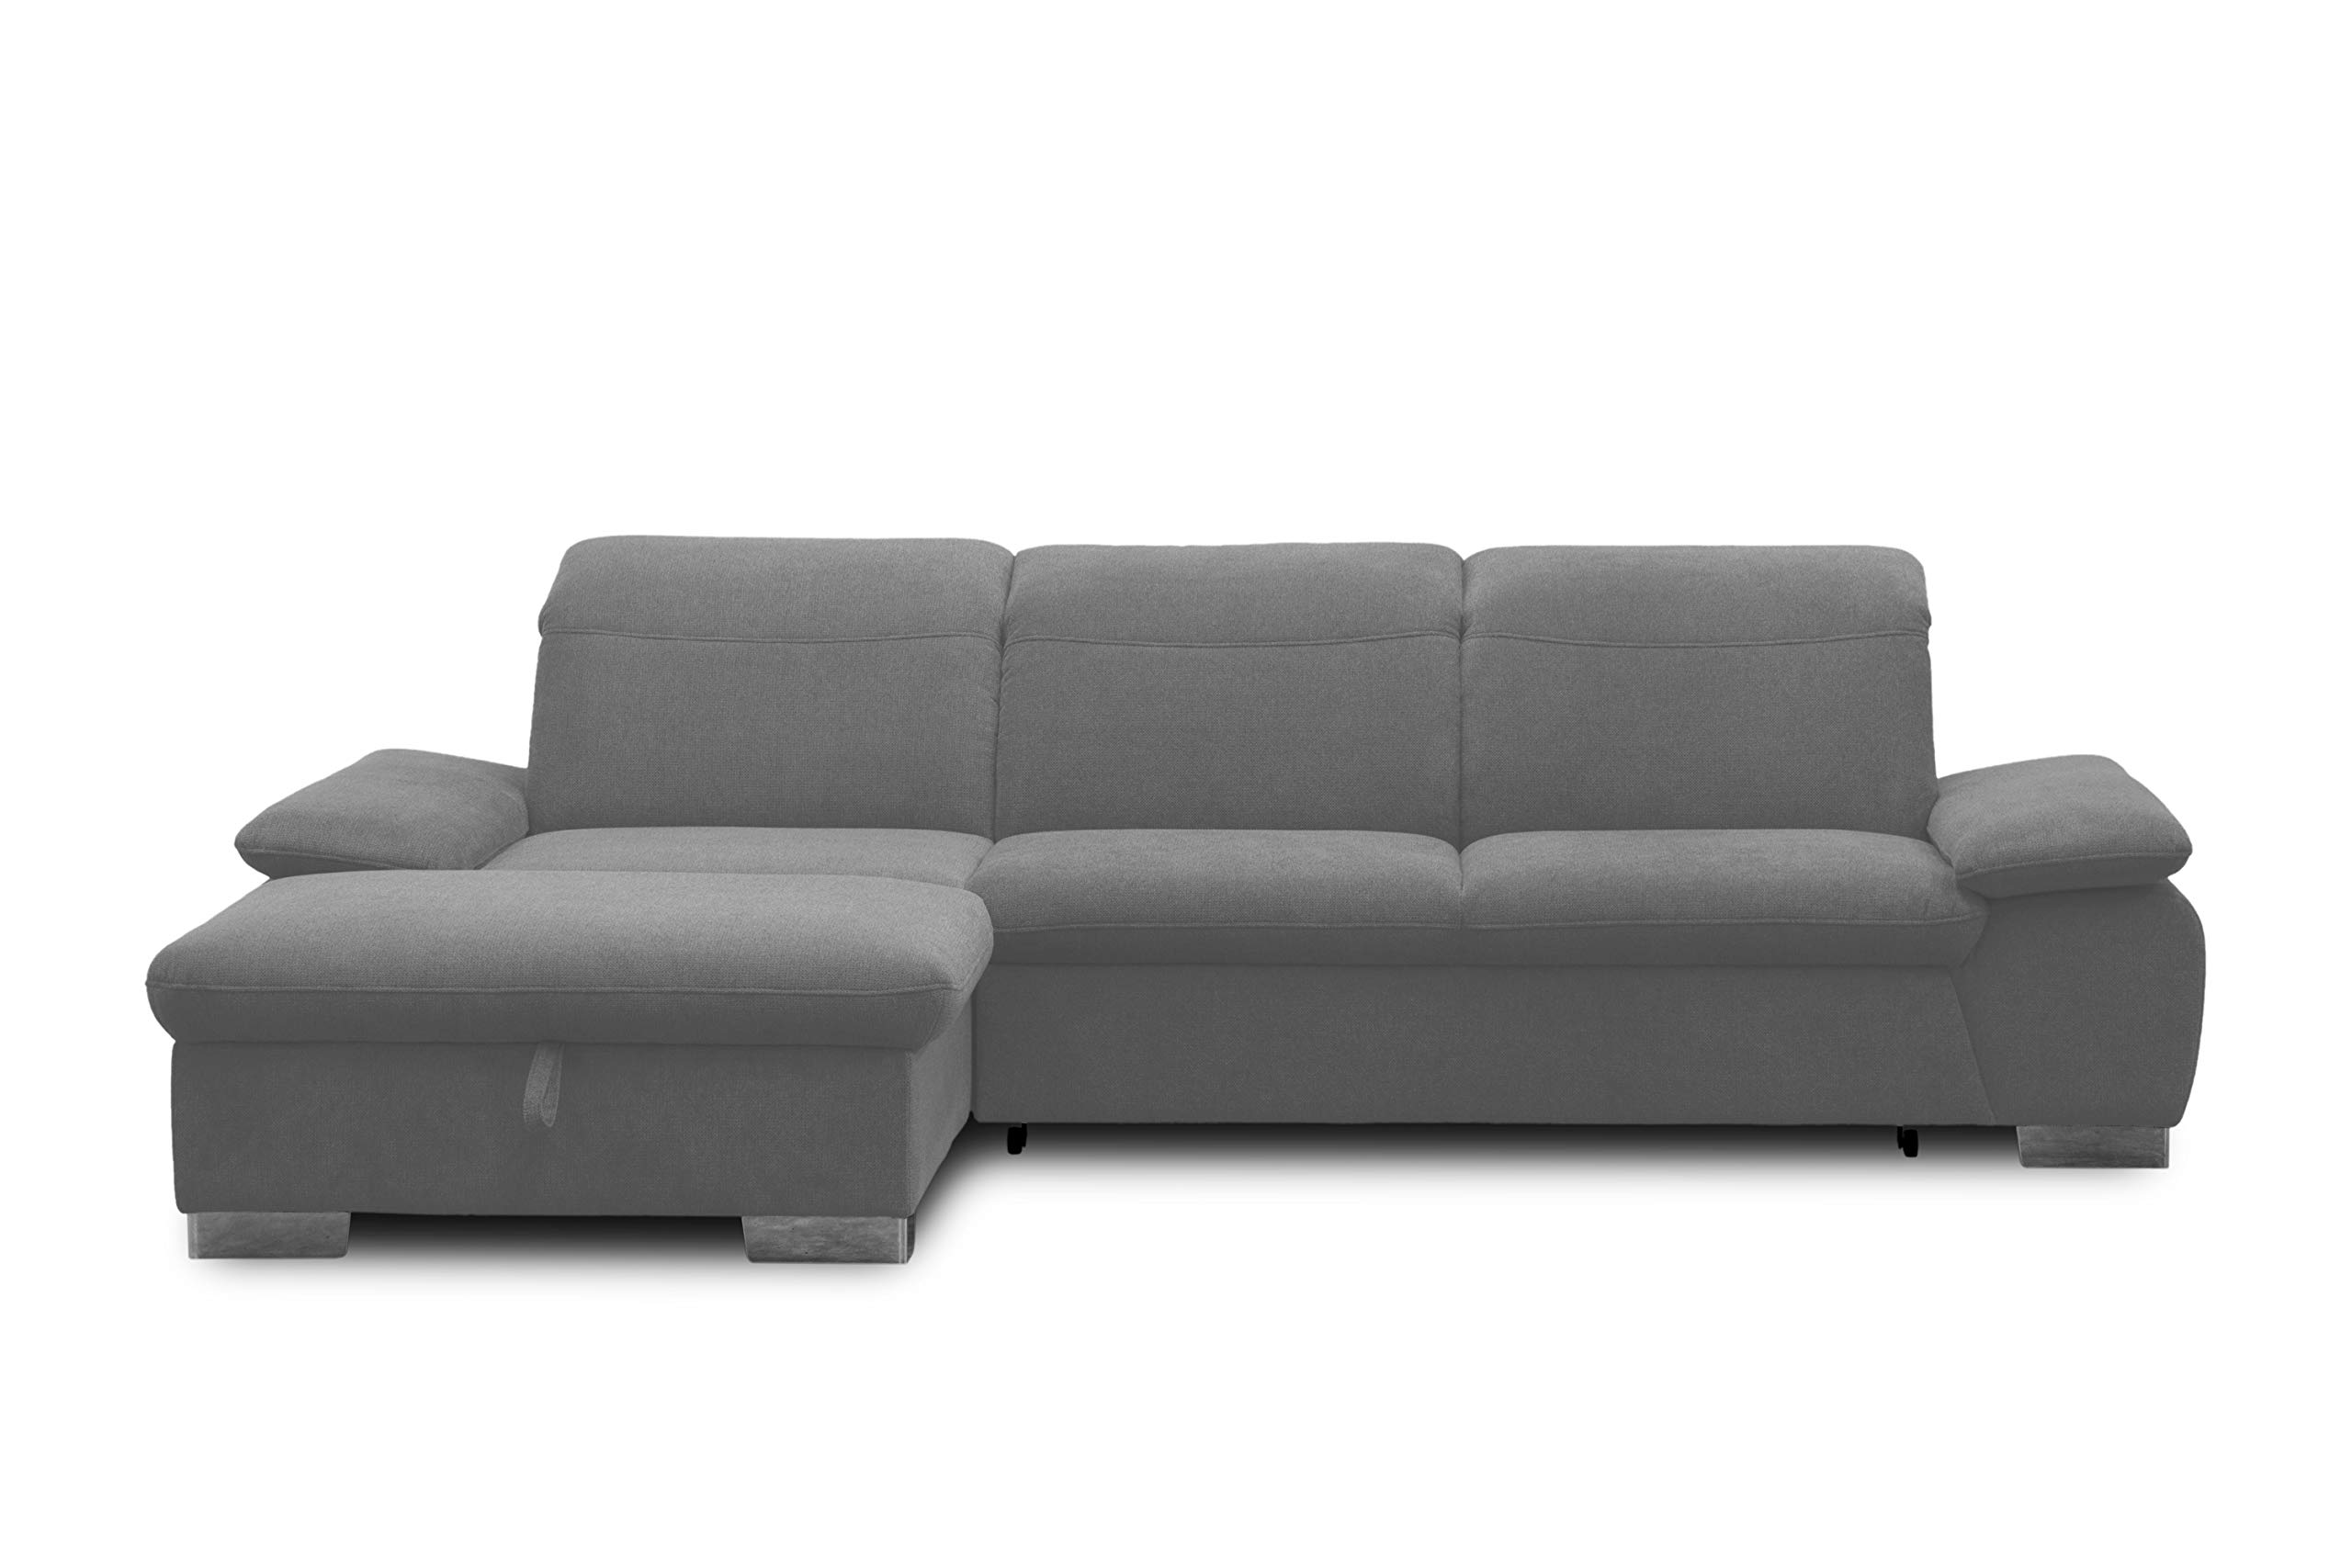 DOMO. Collection Maven Ecksofa, Sofa mit Rückenfunktion, Polsterecke mit Federkern und Relaxfunktion, 286x184x77 cm, Eckcouch in dkl. grau